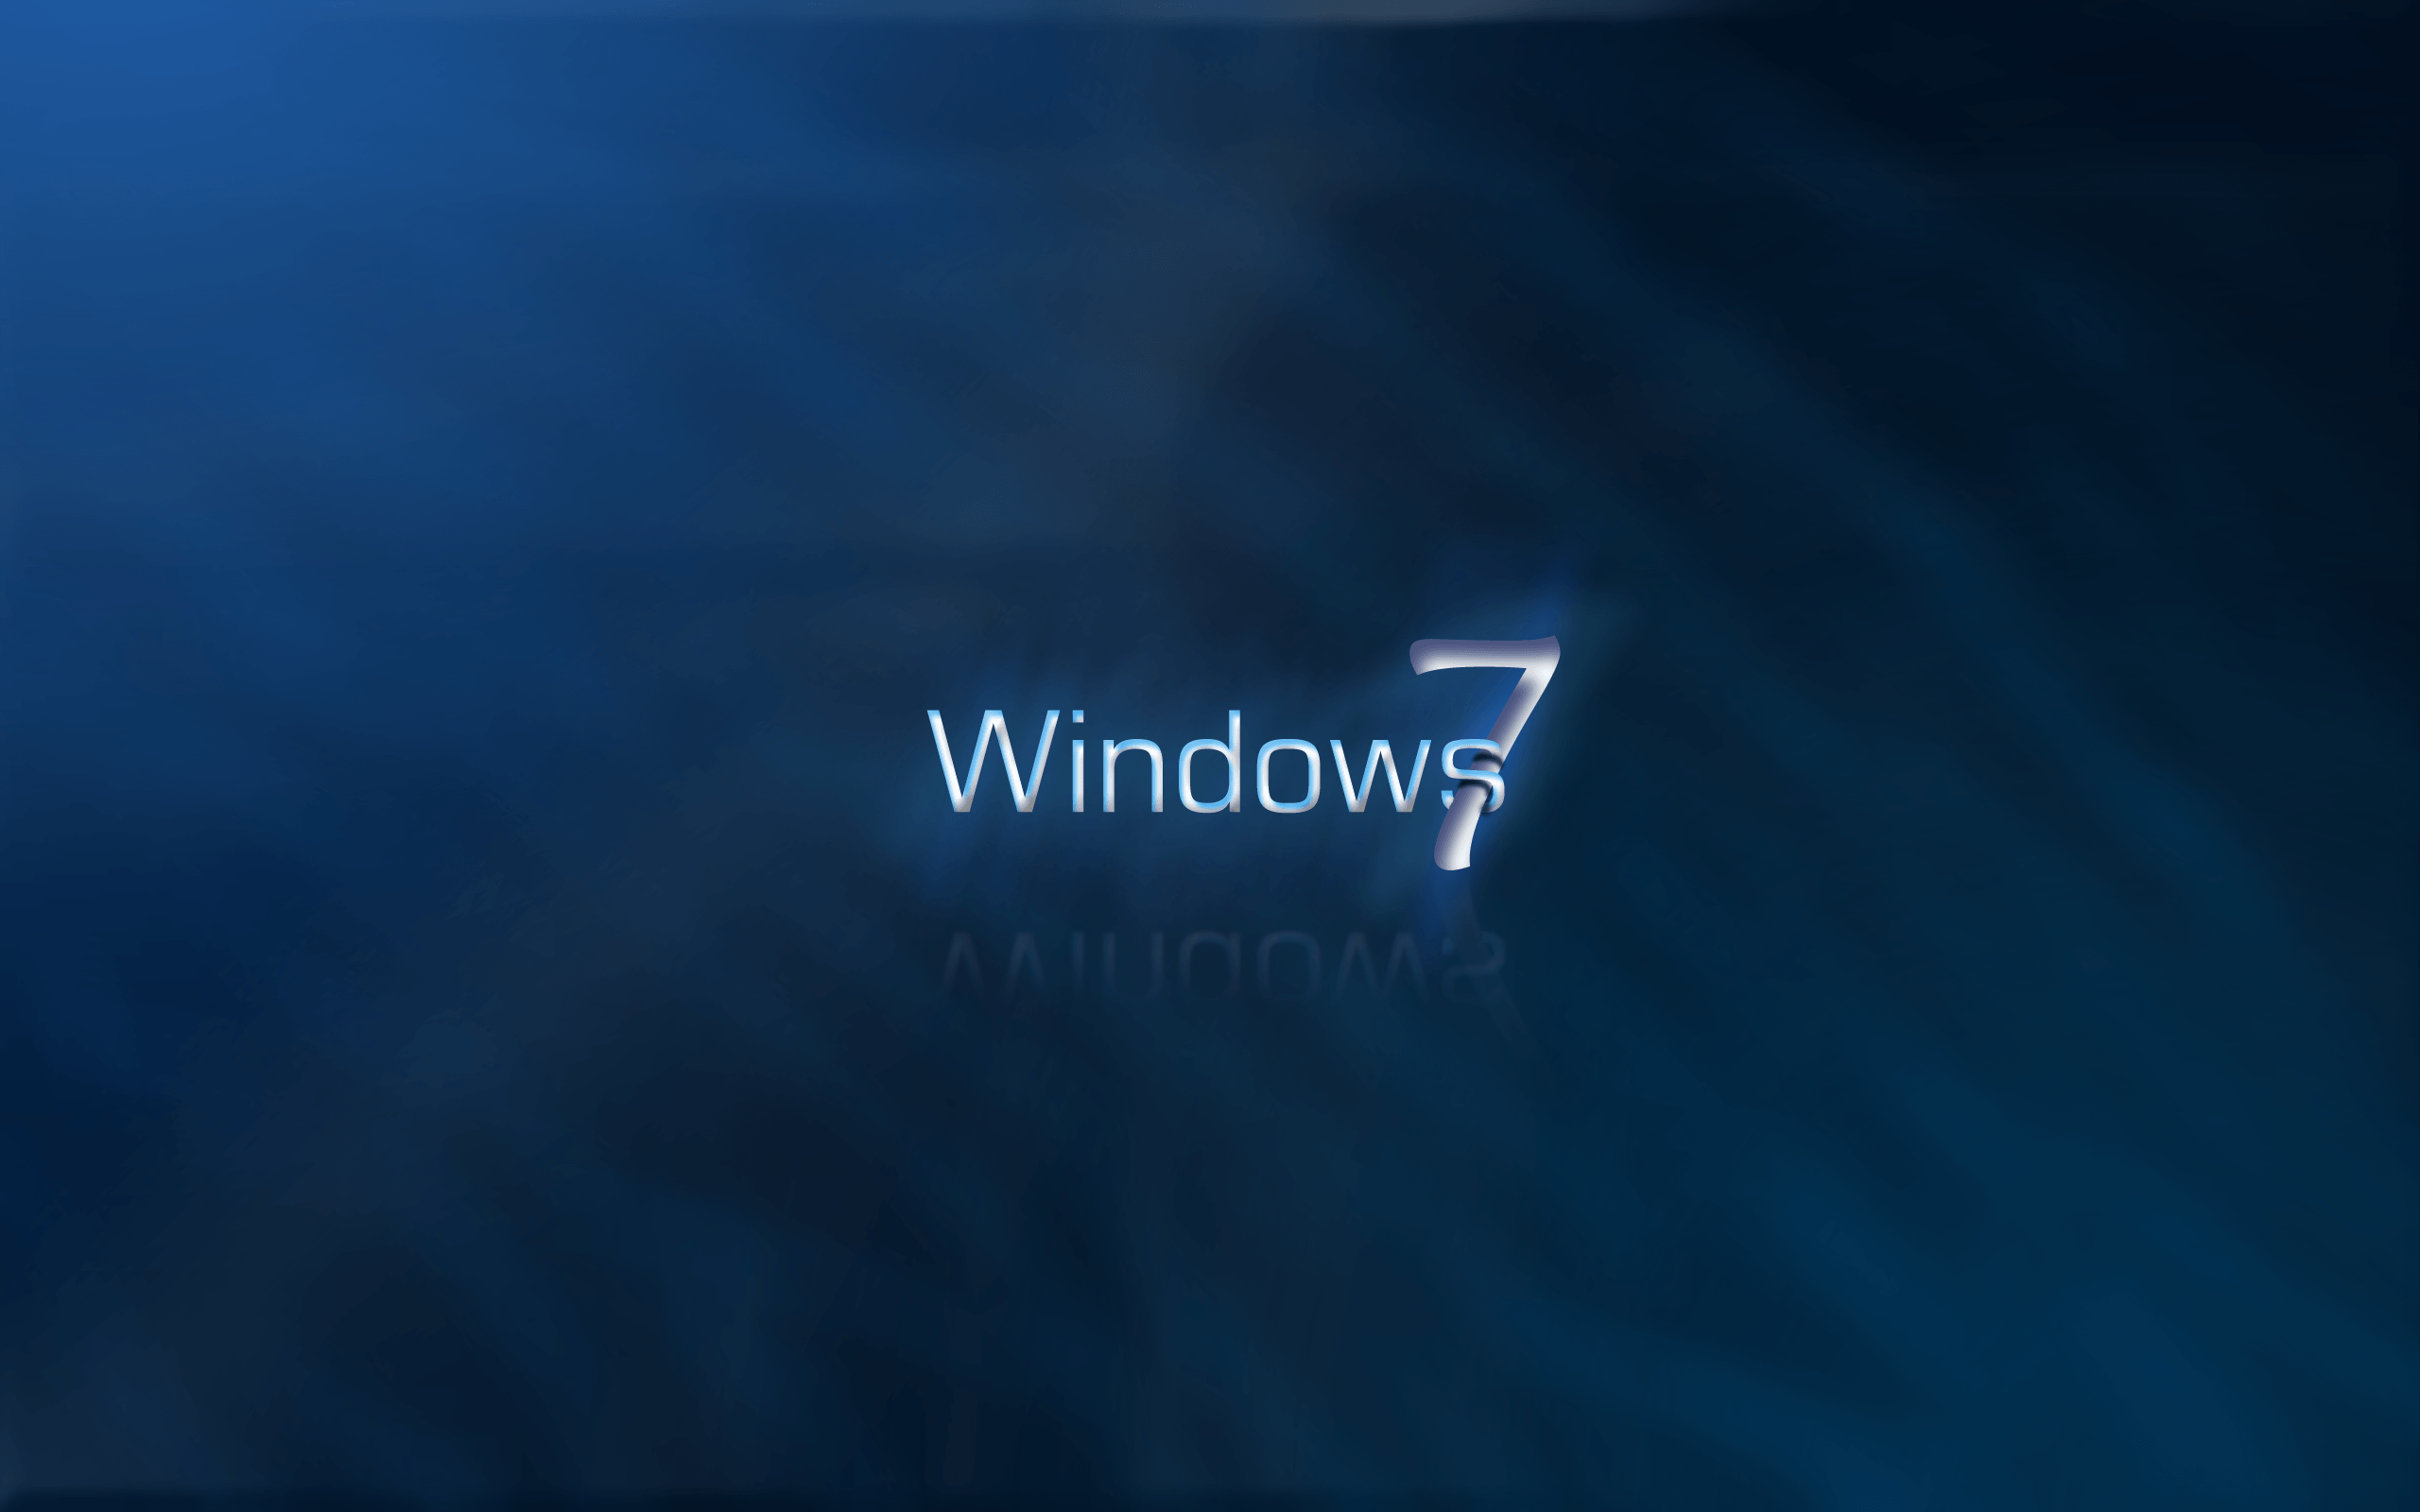 hd window 7 wallpaper: Windows 7 Wallpaper